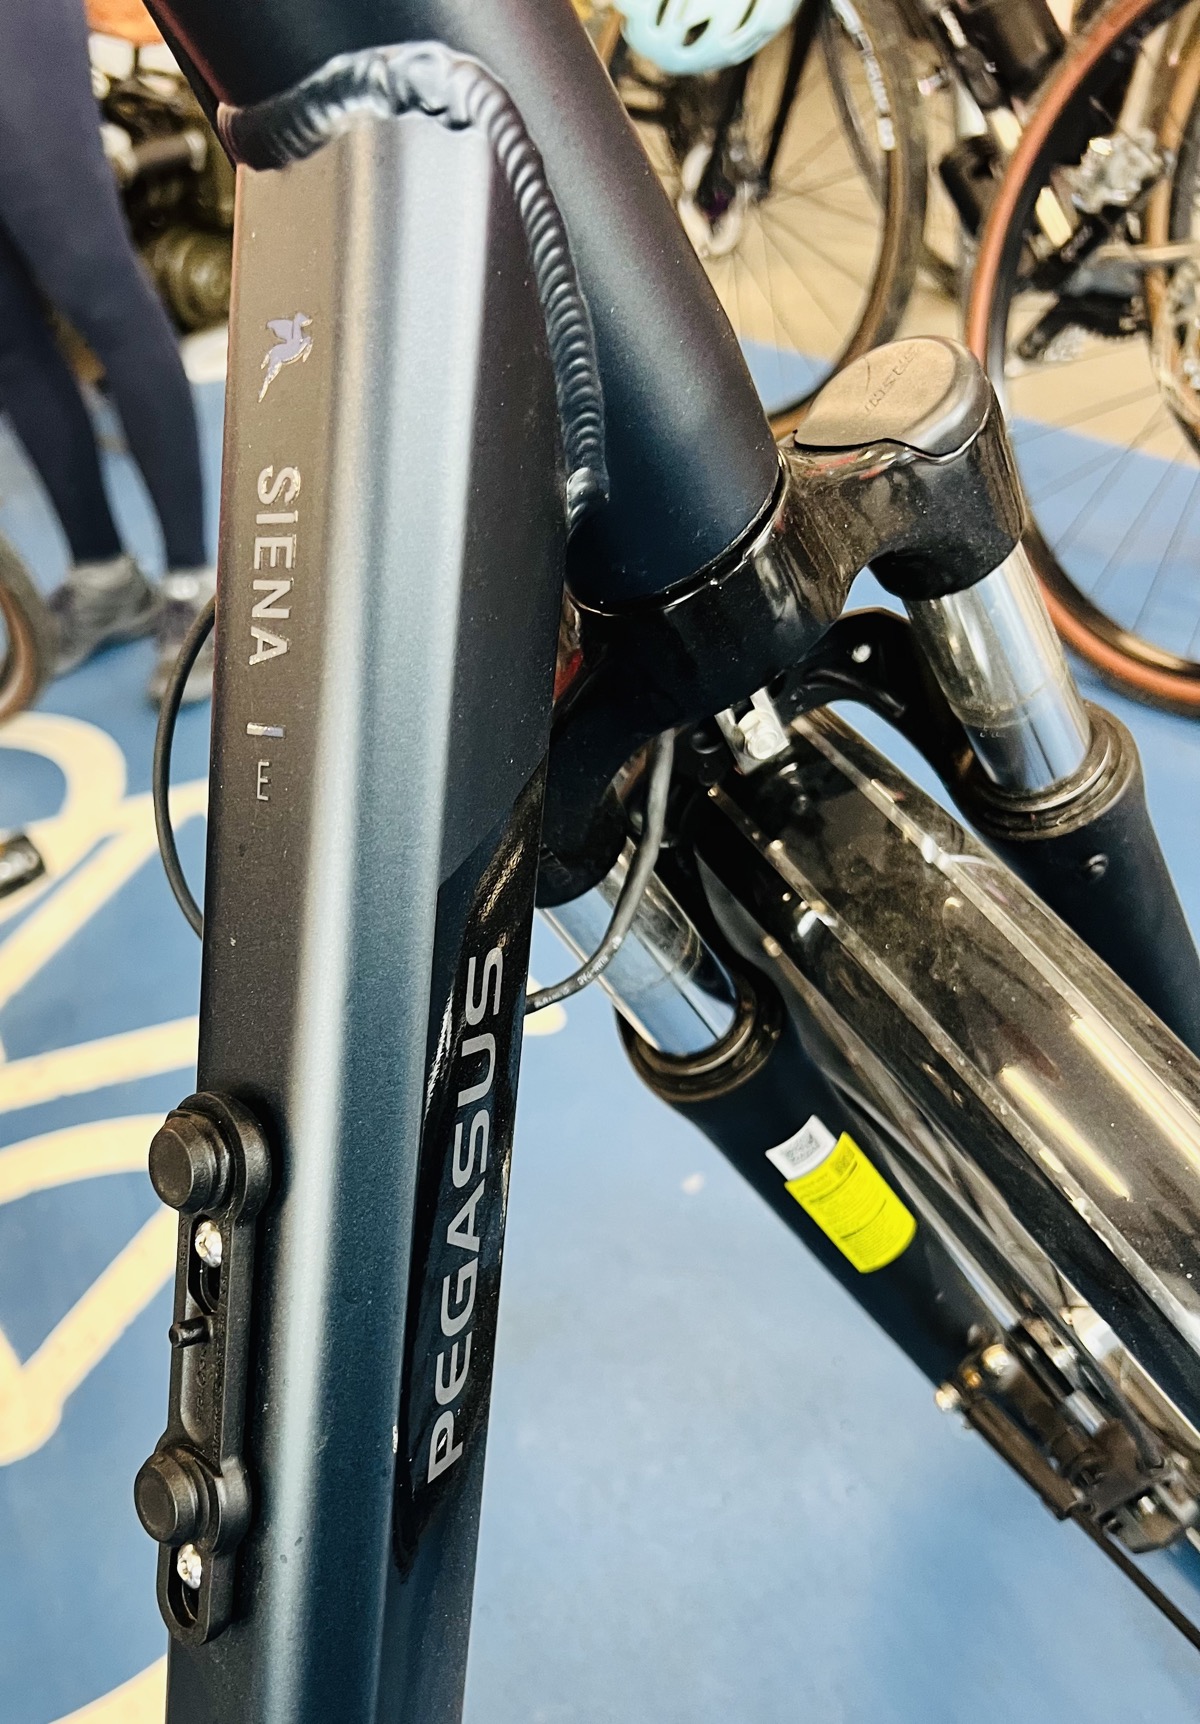 Product label on bike frame